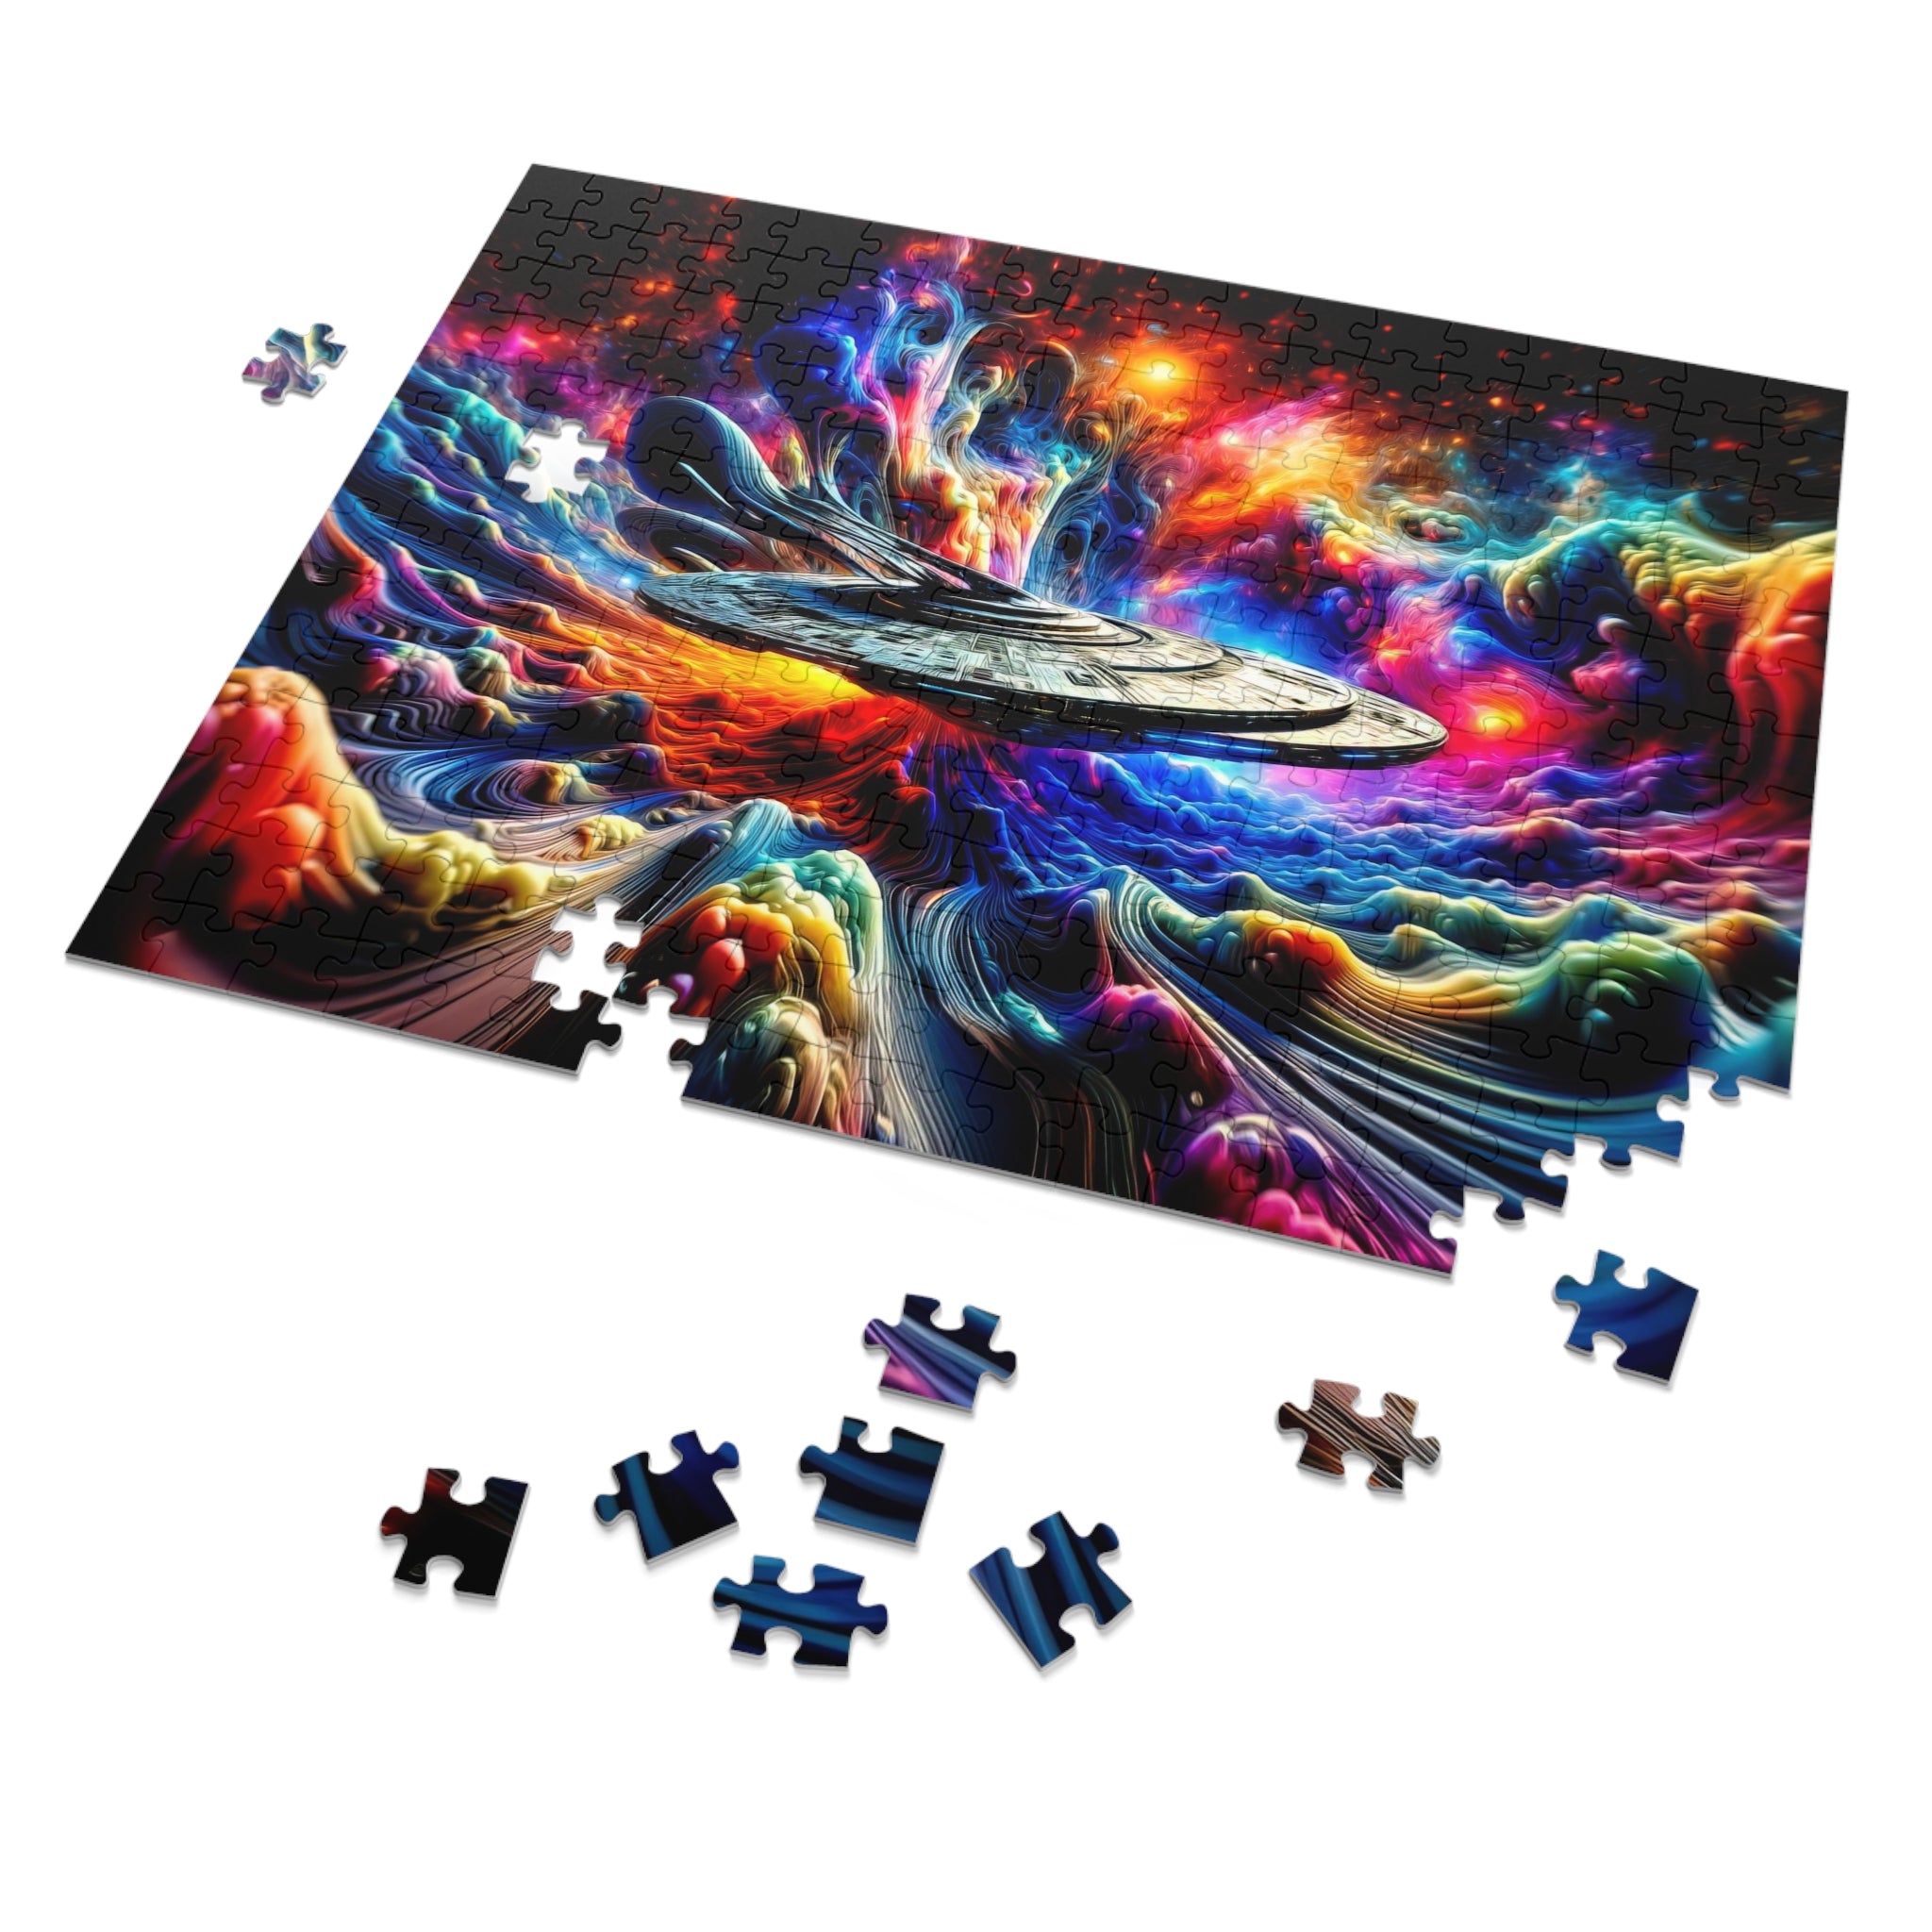 Interstellar Dreamscape Puzzle